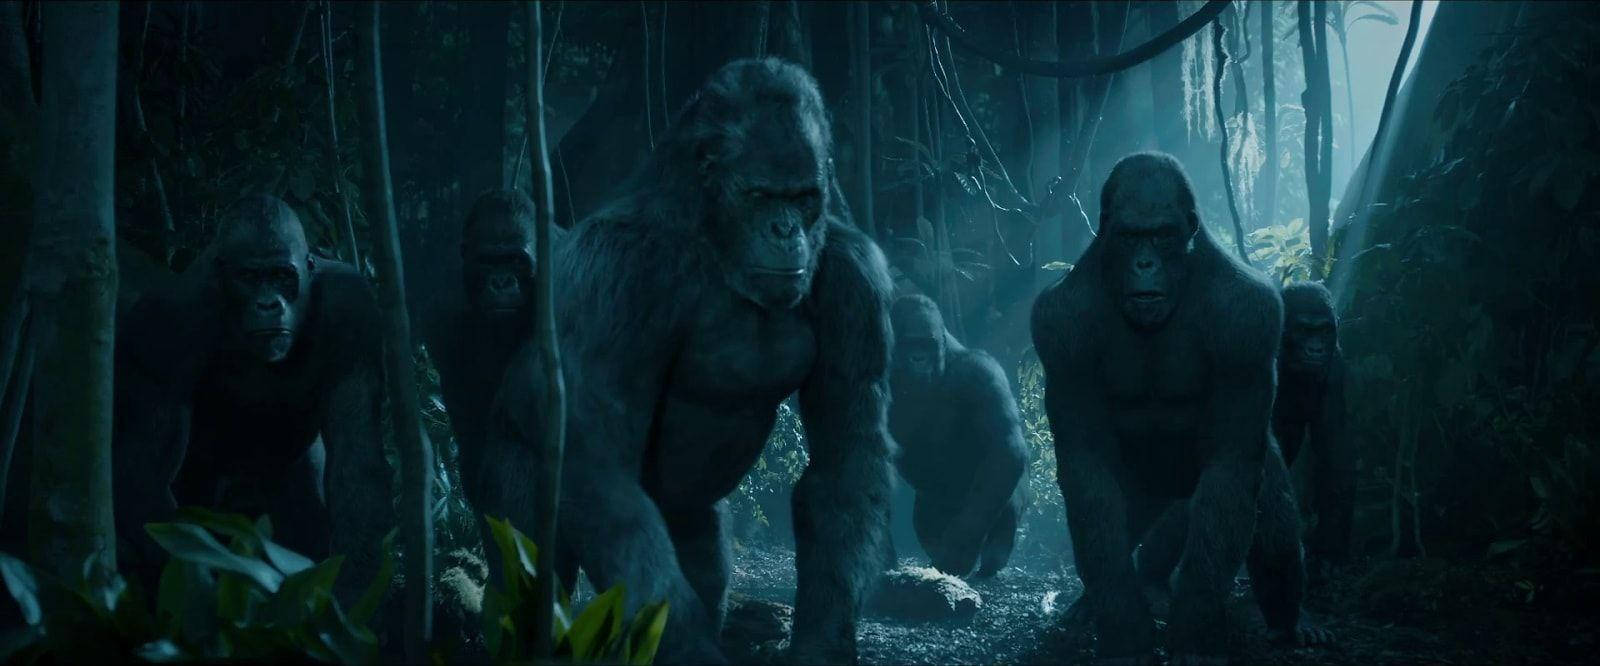 Dielegende Von Tarzan - Große Gorilla Familie Wallpaper